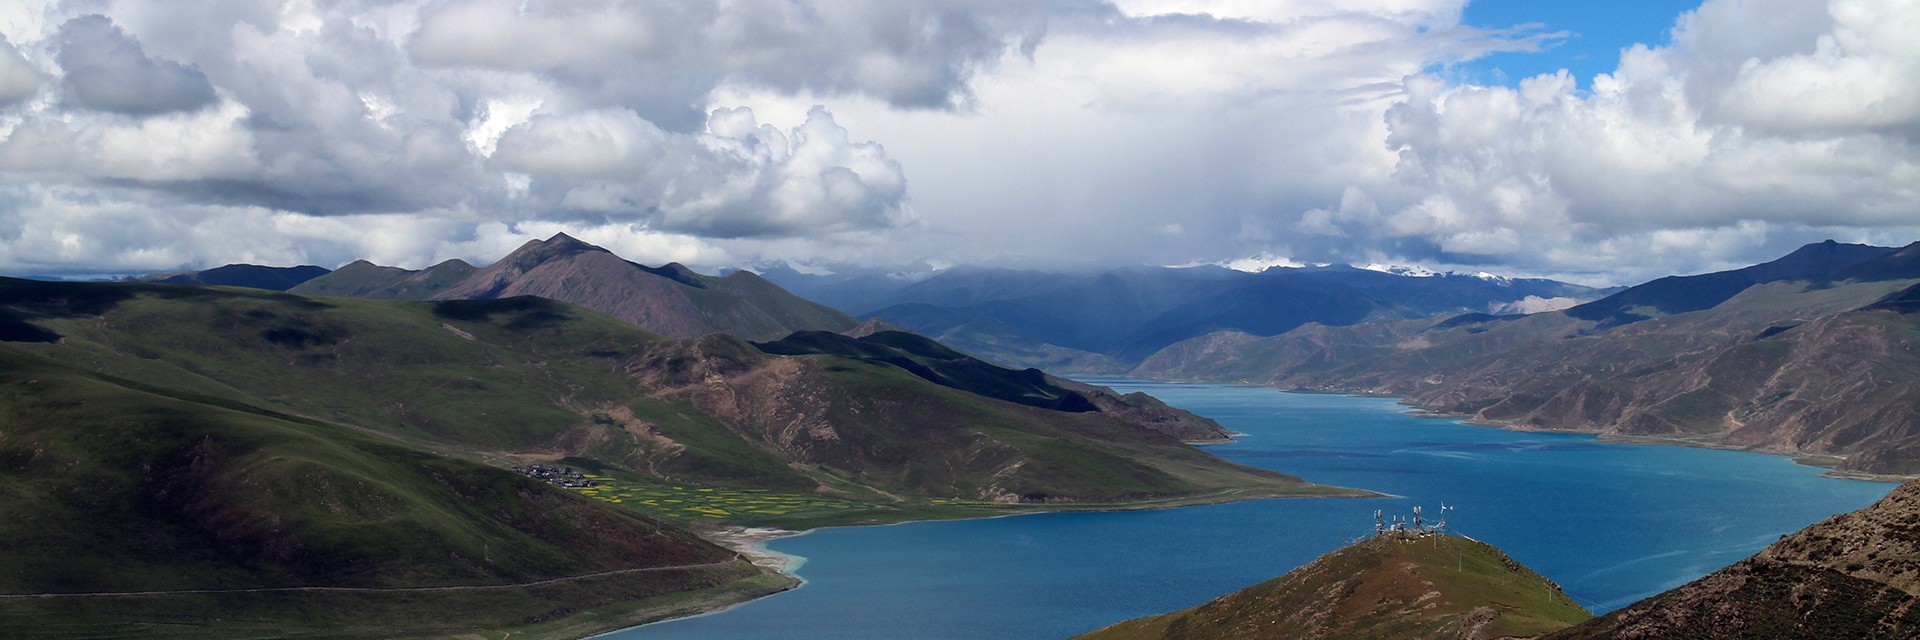 Lhasa to Yamdrok Lake Tour